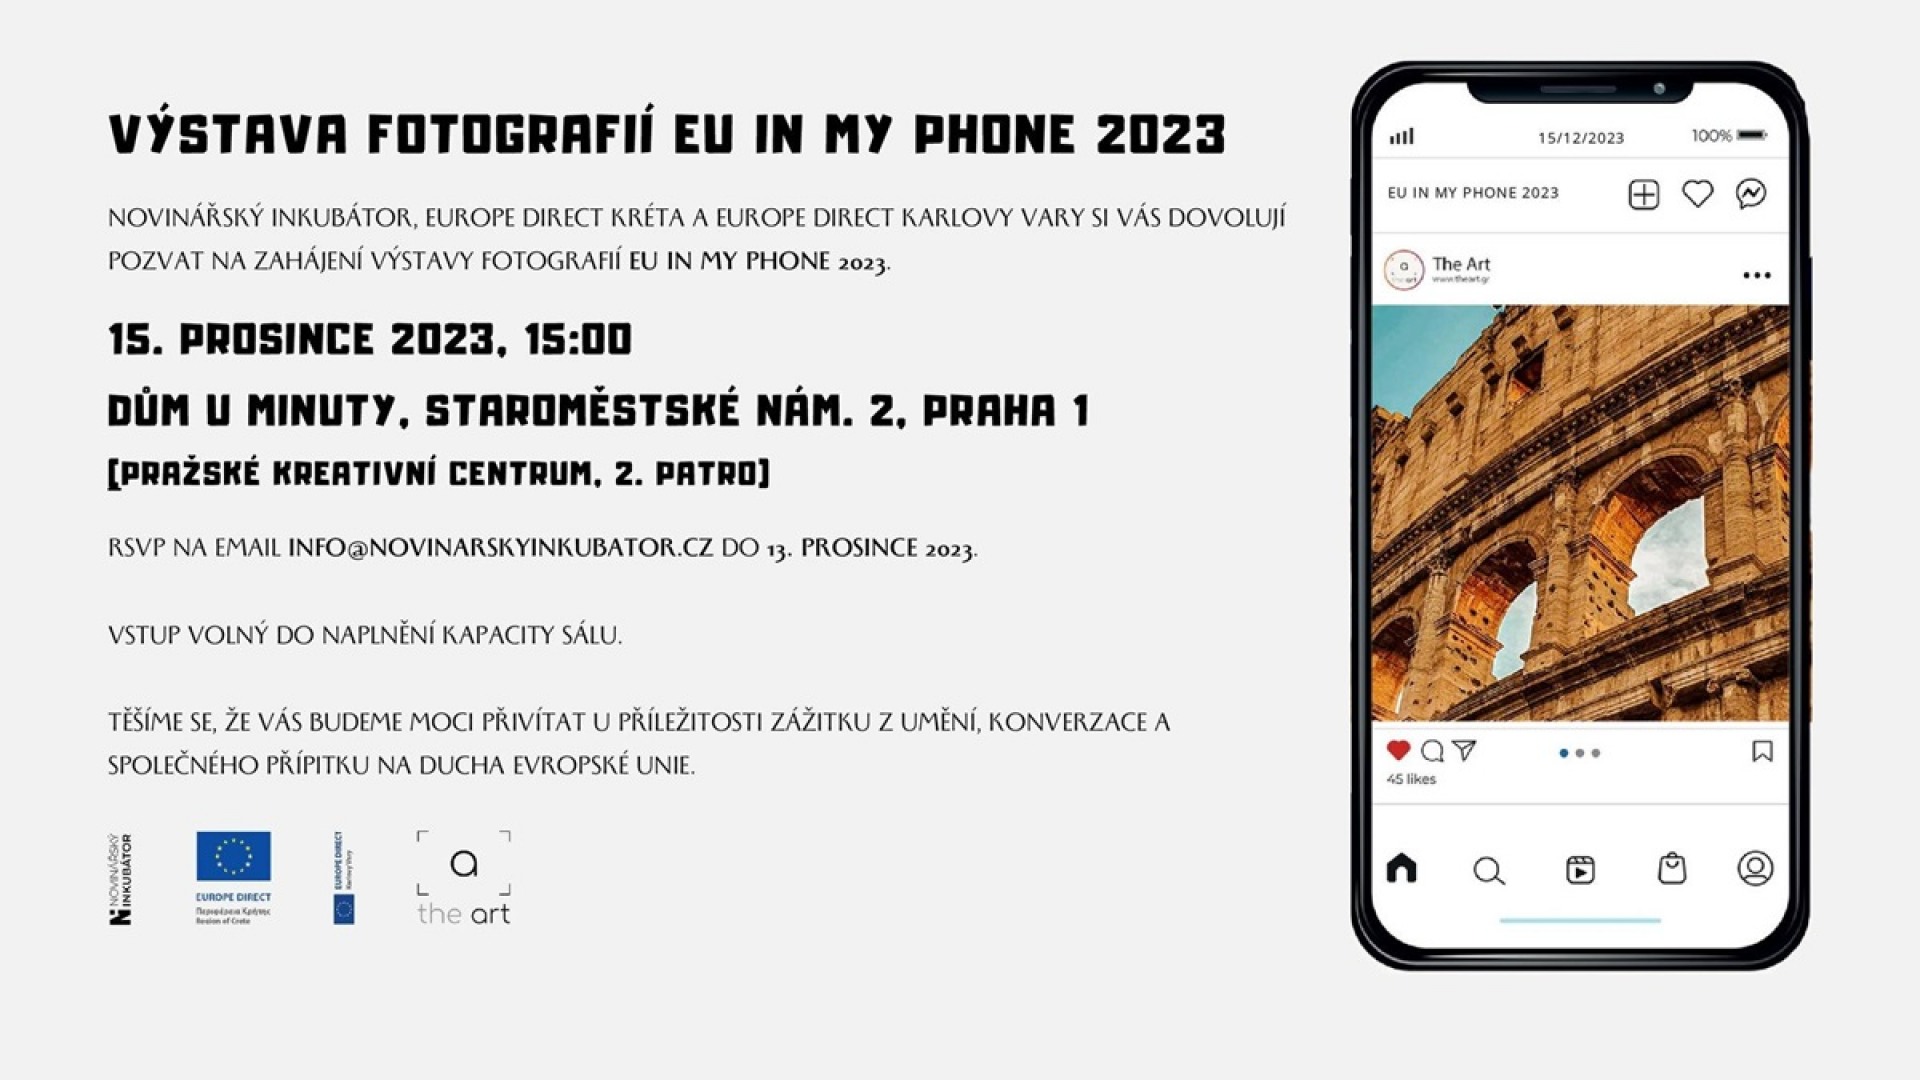 EU in my Phone 2023 in Prague